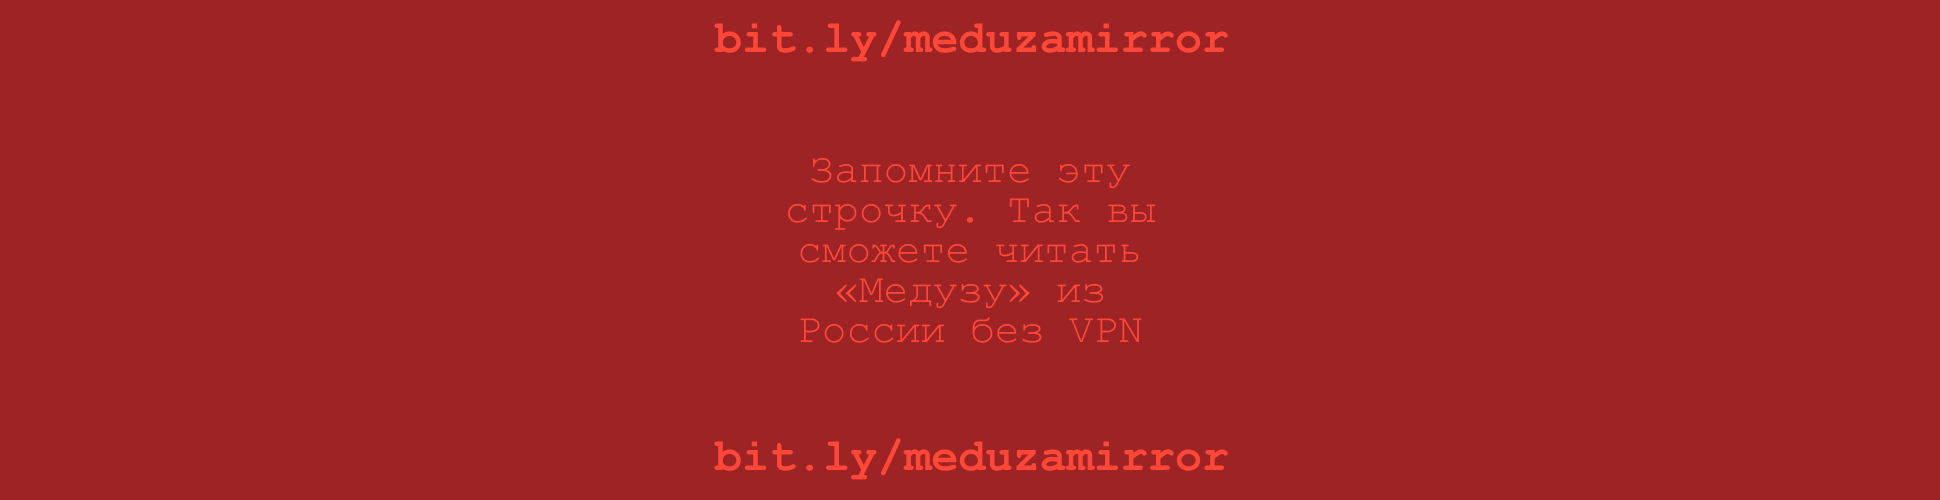 bit.ly/meduzamirror. Запомните эту строчку. Так вы сможете читать «Медузу» из России без VPN